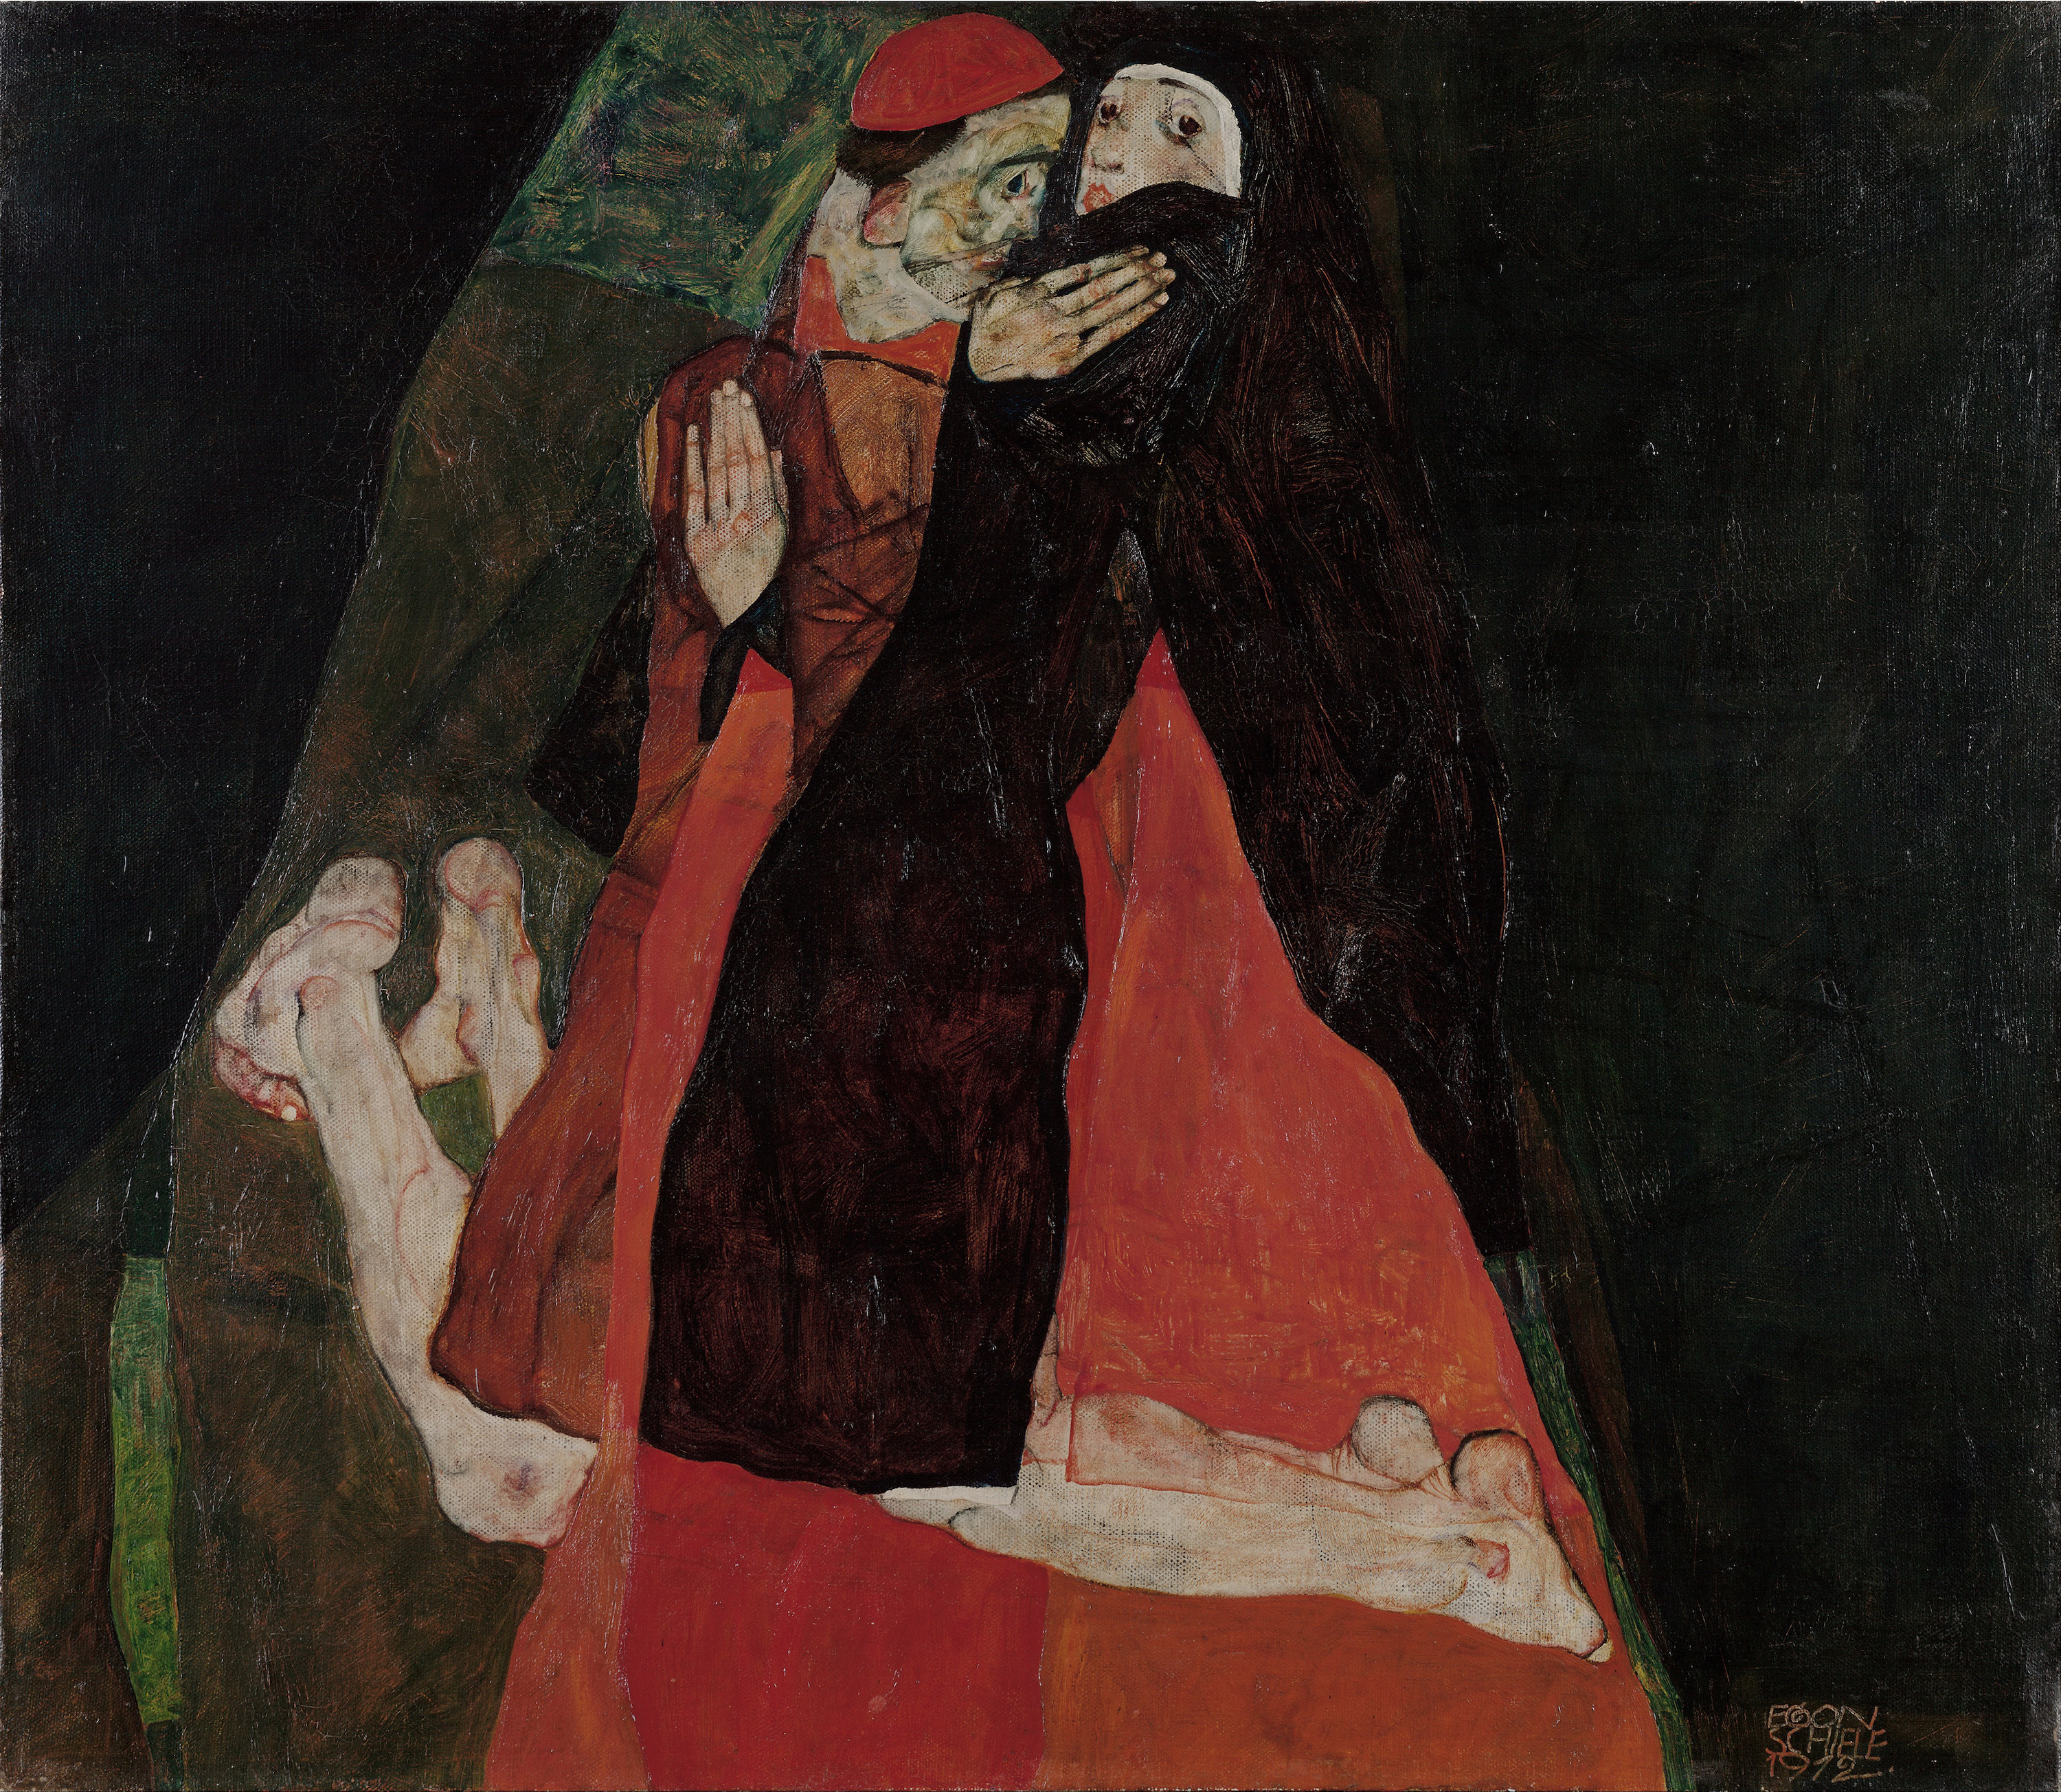 Kardinál a jeptiška (Pohlazení) by Egon Schiele - 1912 - 80.5 x 70 cm 